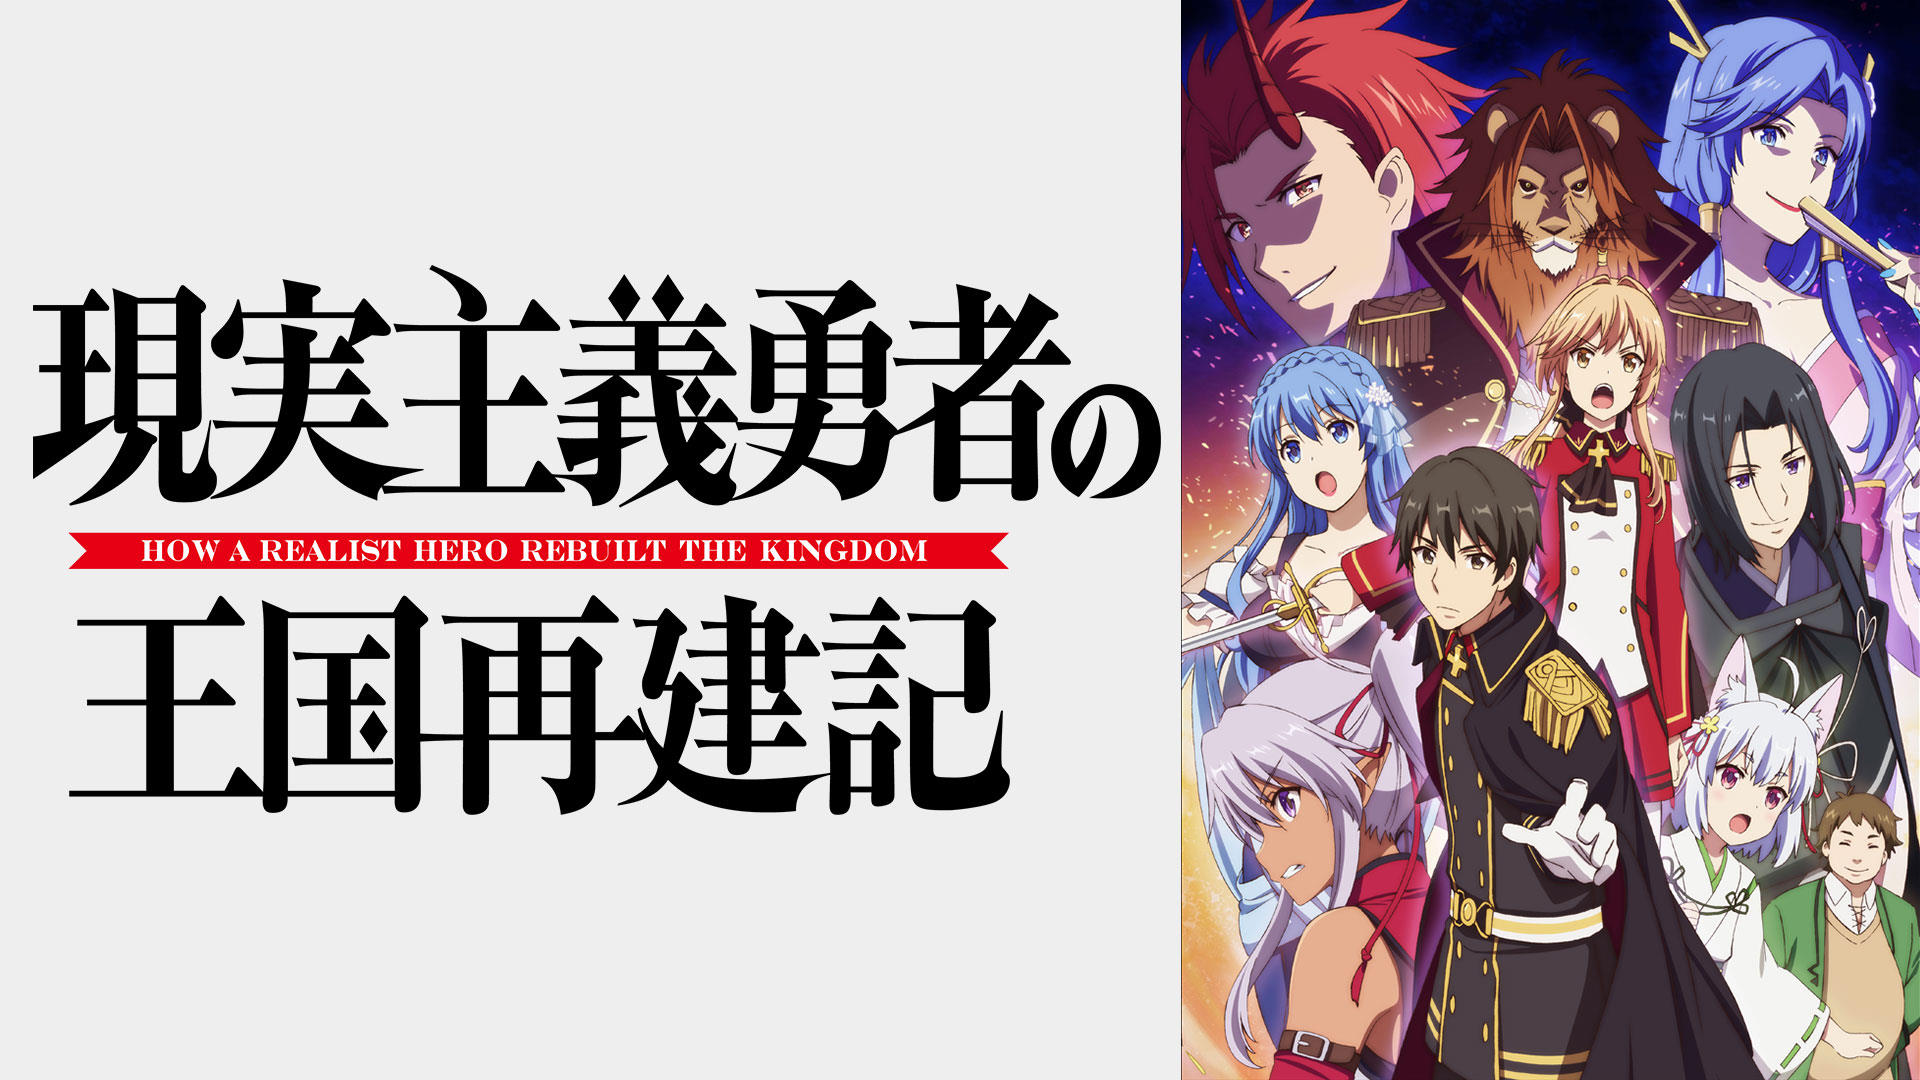 Otome Game no Hametsu Flag – Novo trailer do filme anime - Manga Livre RS